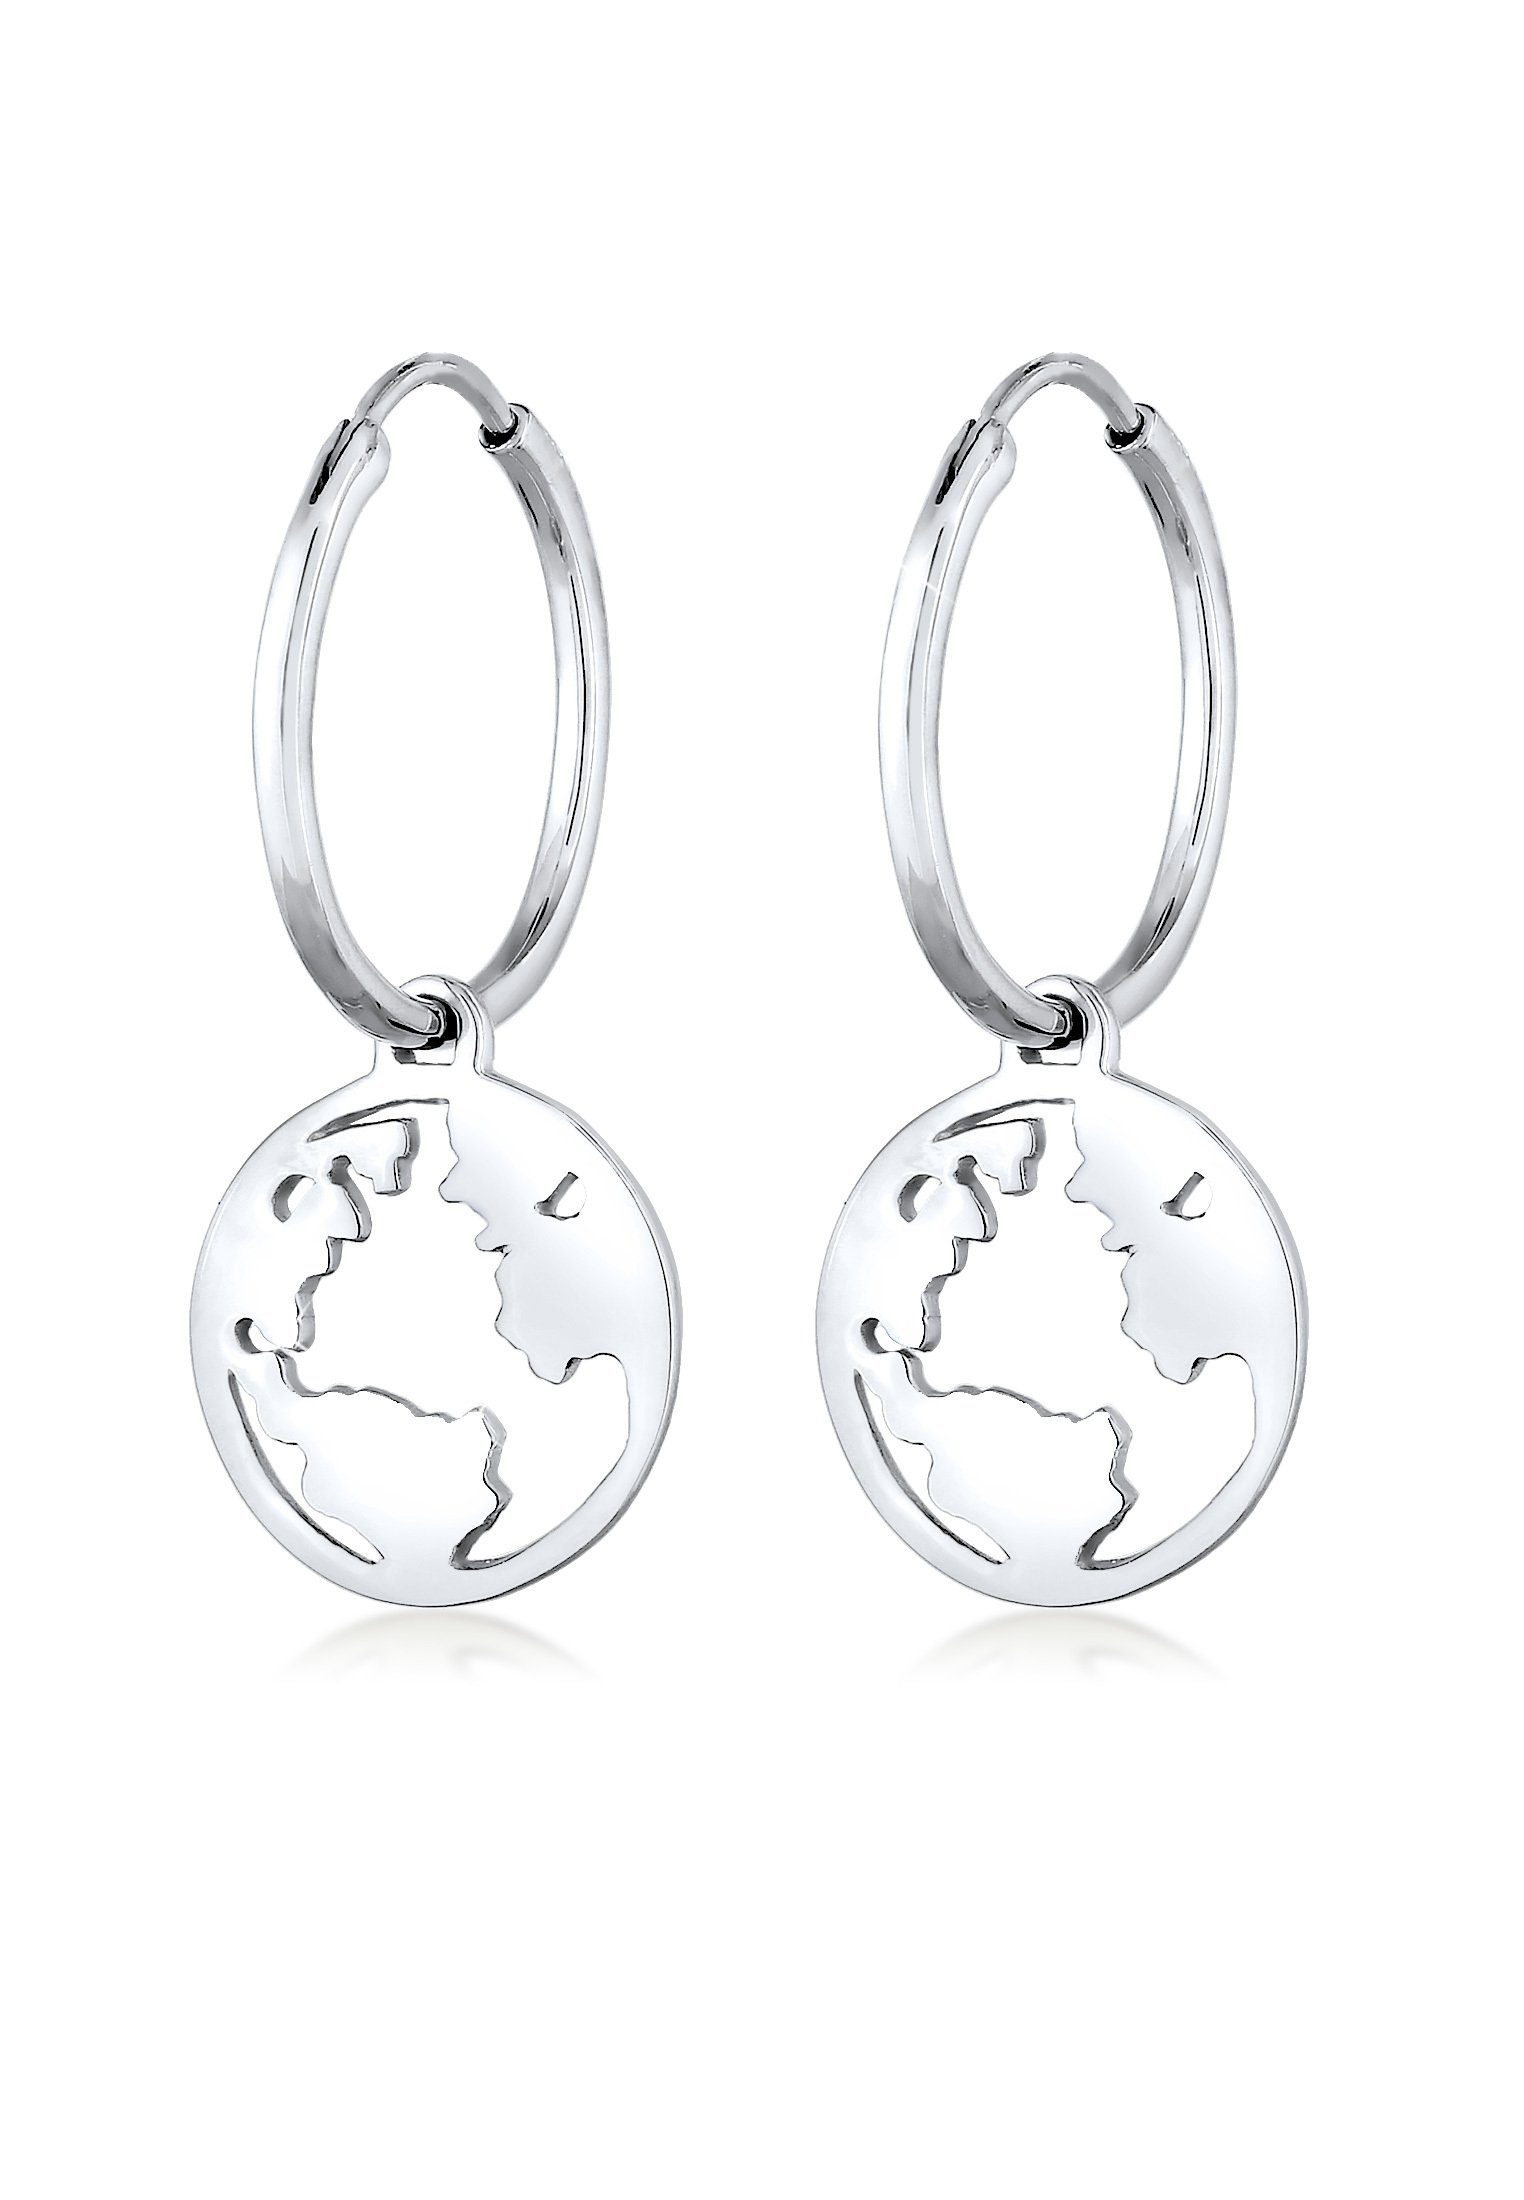 Elli Paar Creolen Globus Trend anlaufgeschützt Hänger Silberschmuck hochglanzpoliert Silber, 925 Reisen und Weltkugel